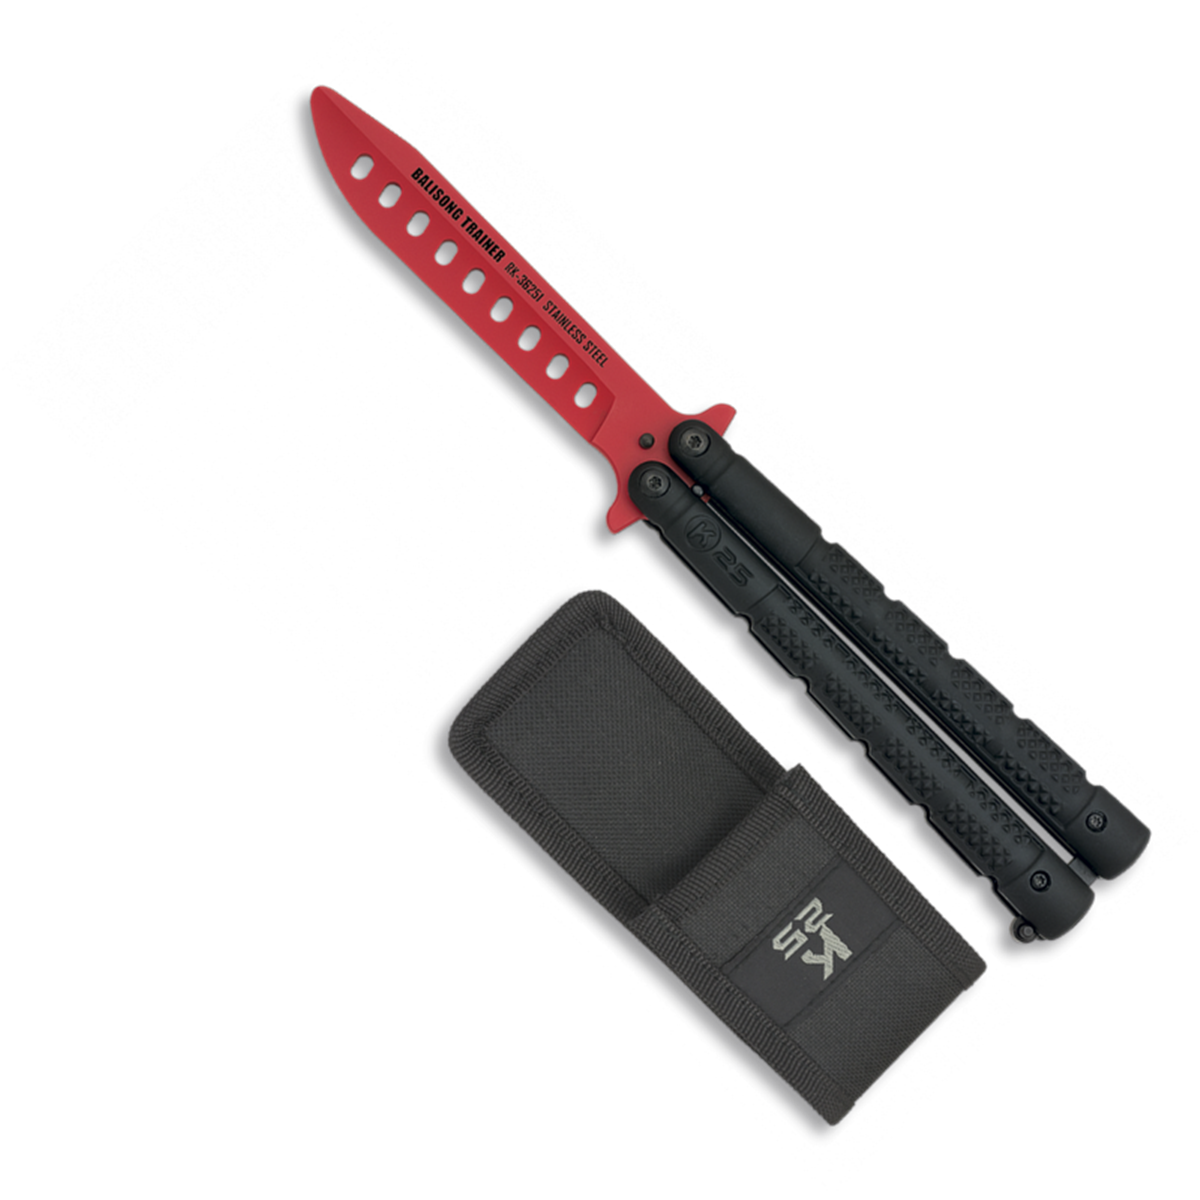 Couteau papillon d'entrainement K25 36251 rouge/noir 